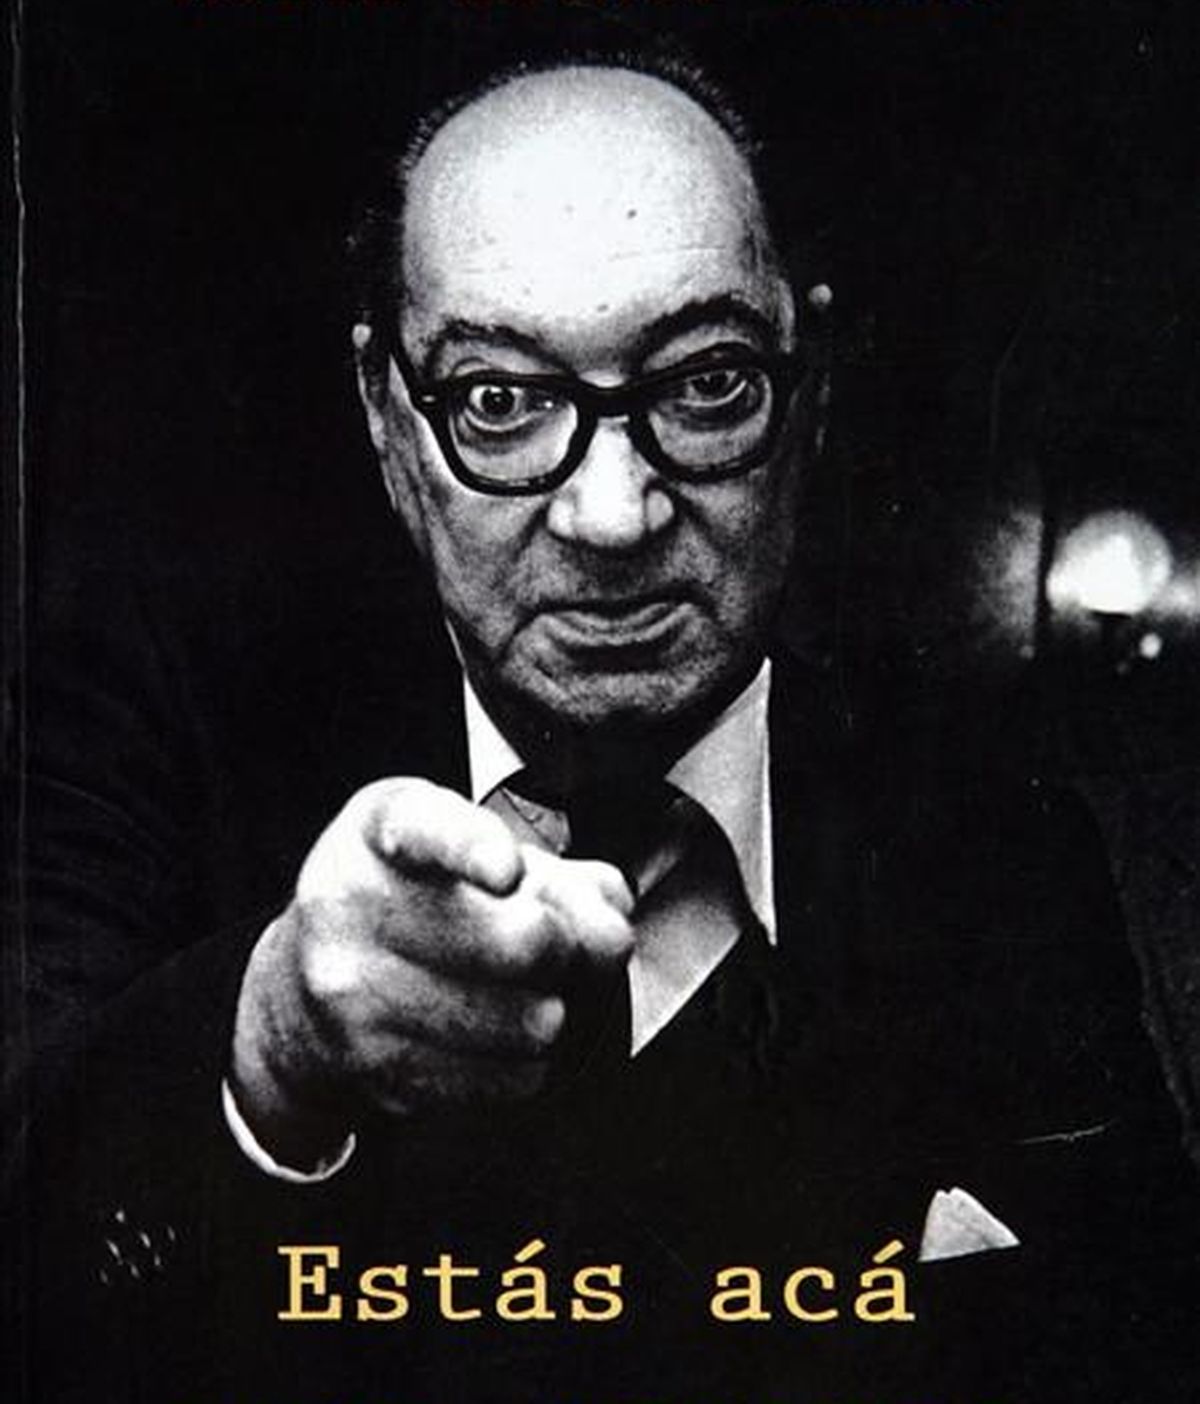 Fotografía de la portada del libro "Estás acá para creerme", de María Esther Gilio, sobre la vida del escritor uruguayo Juan Carlos Onetti. EFE/Archivo